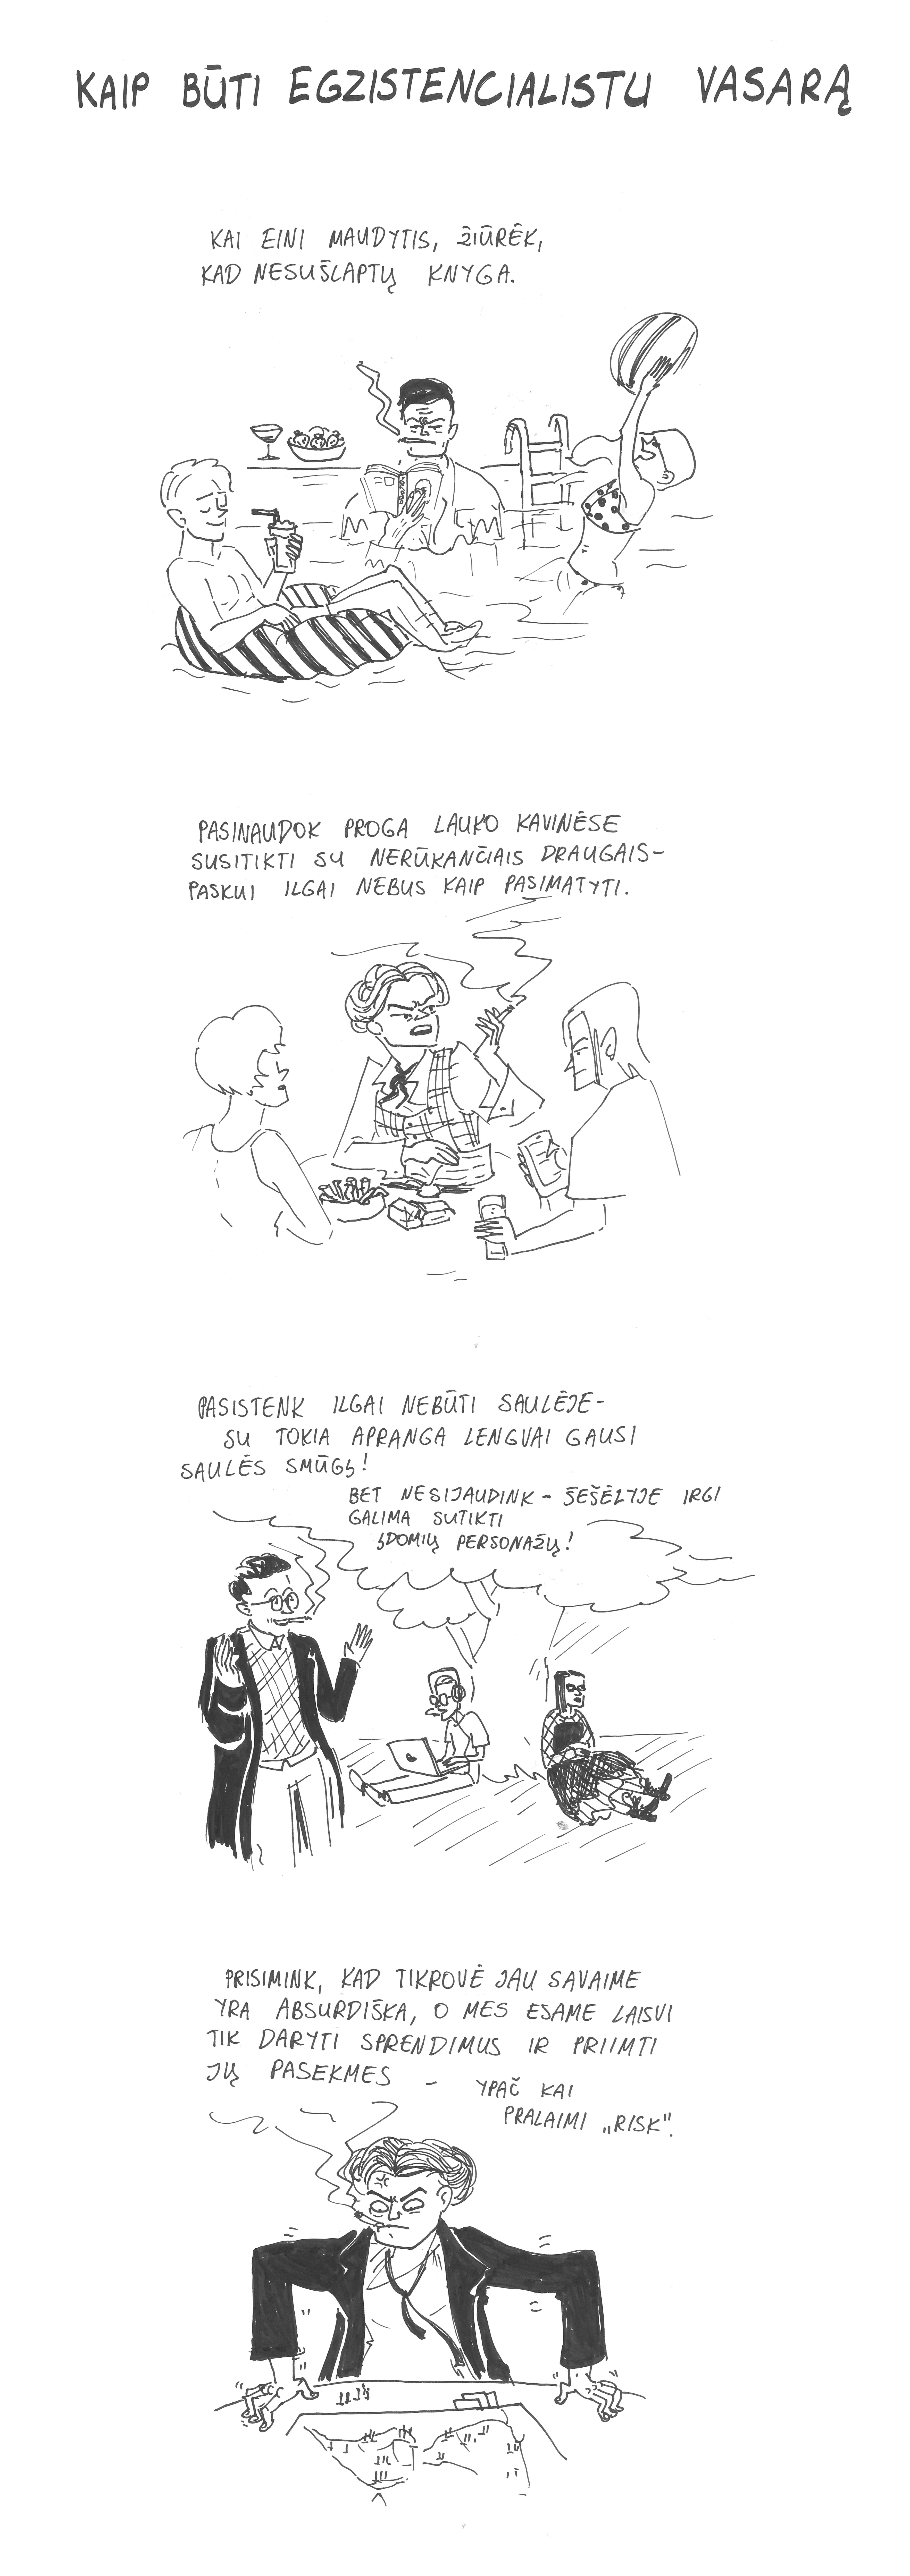 Miglės Anušauskaitės komiksas